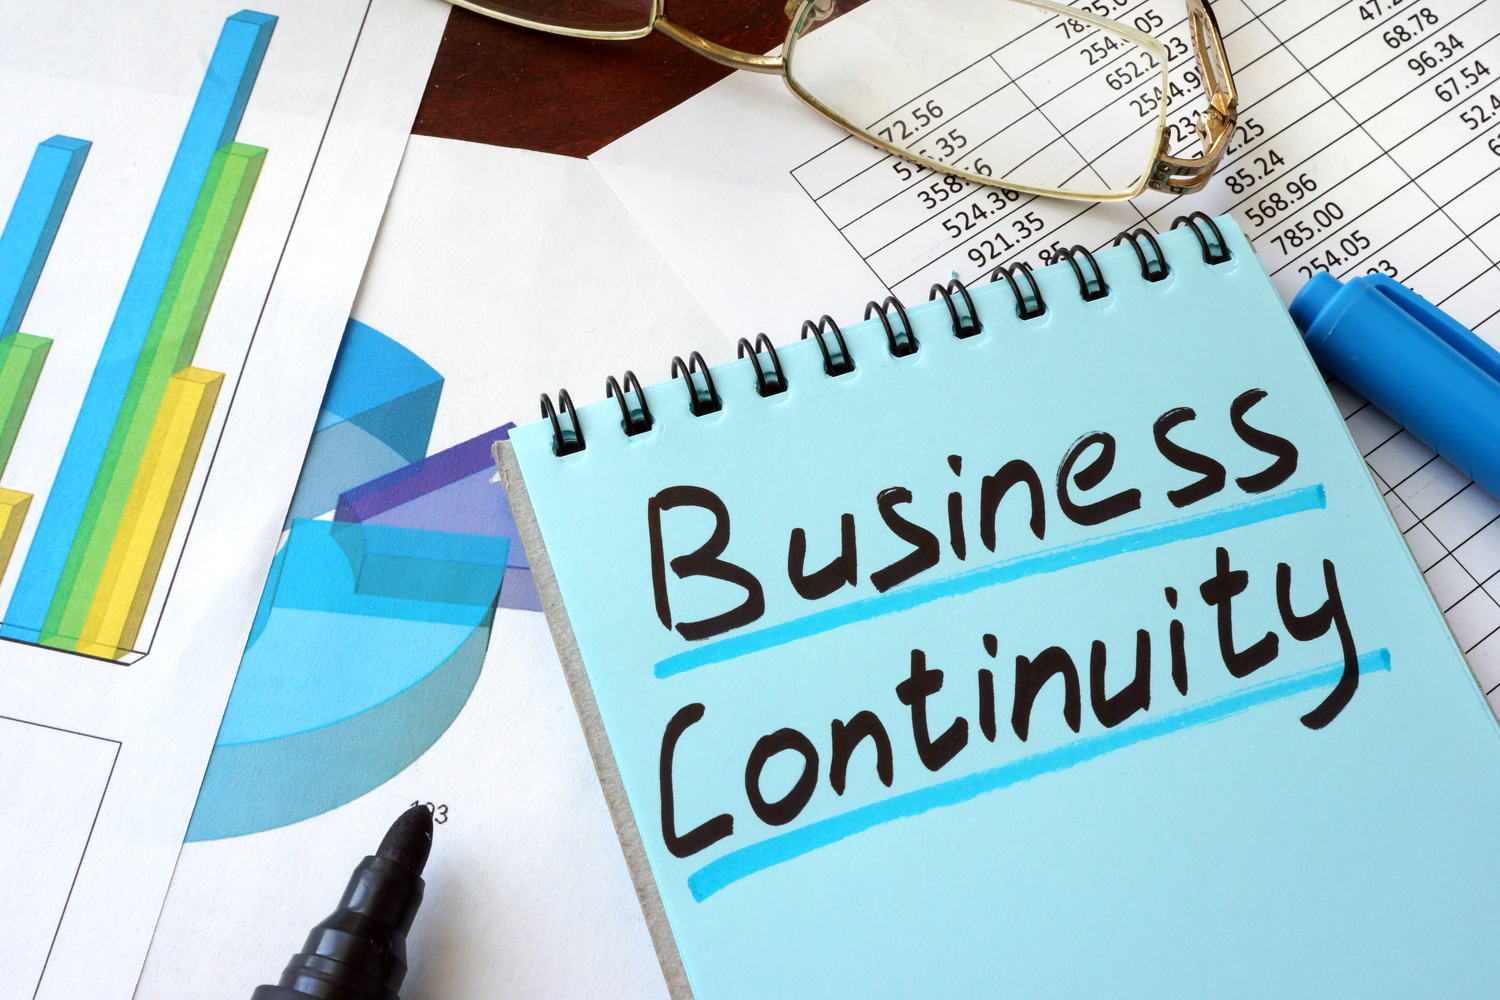 continuidad de negocio business continuity